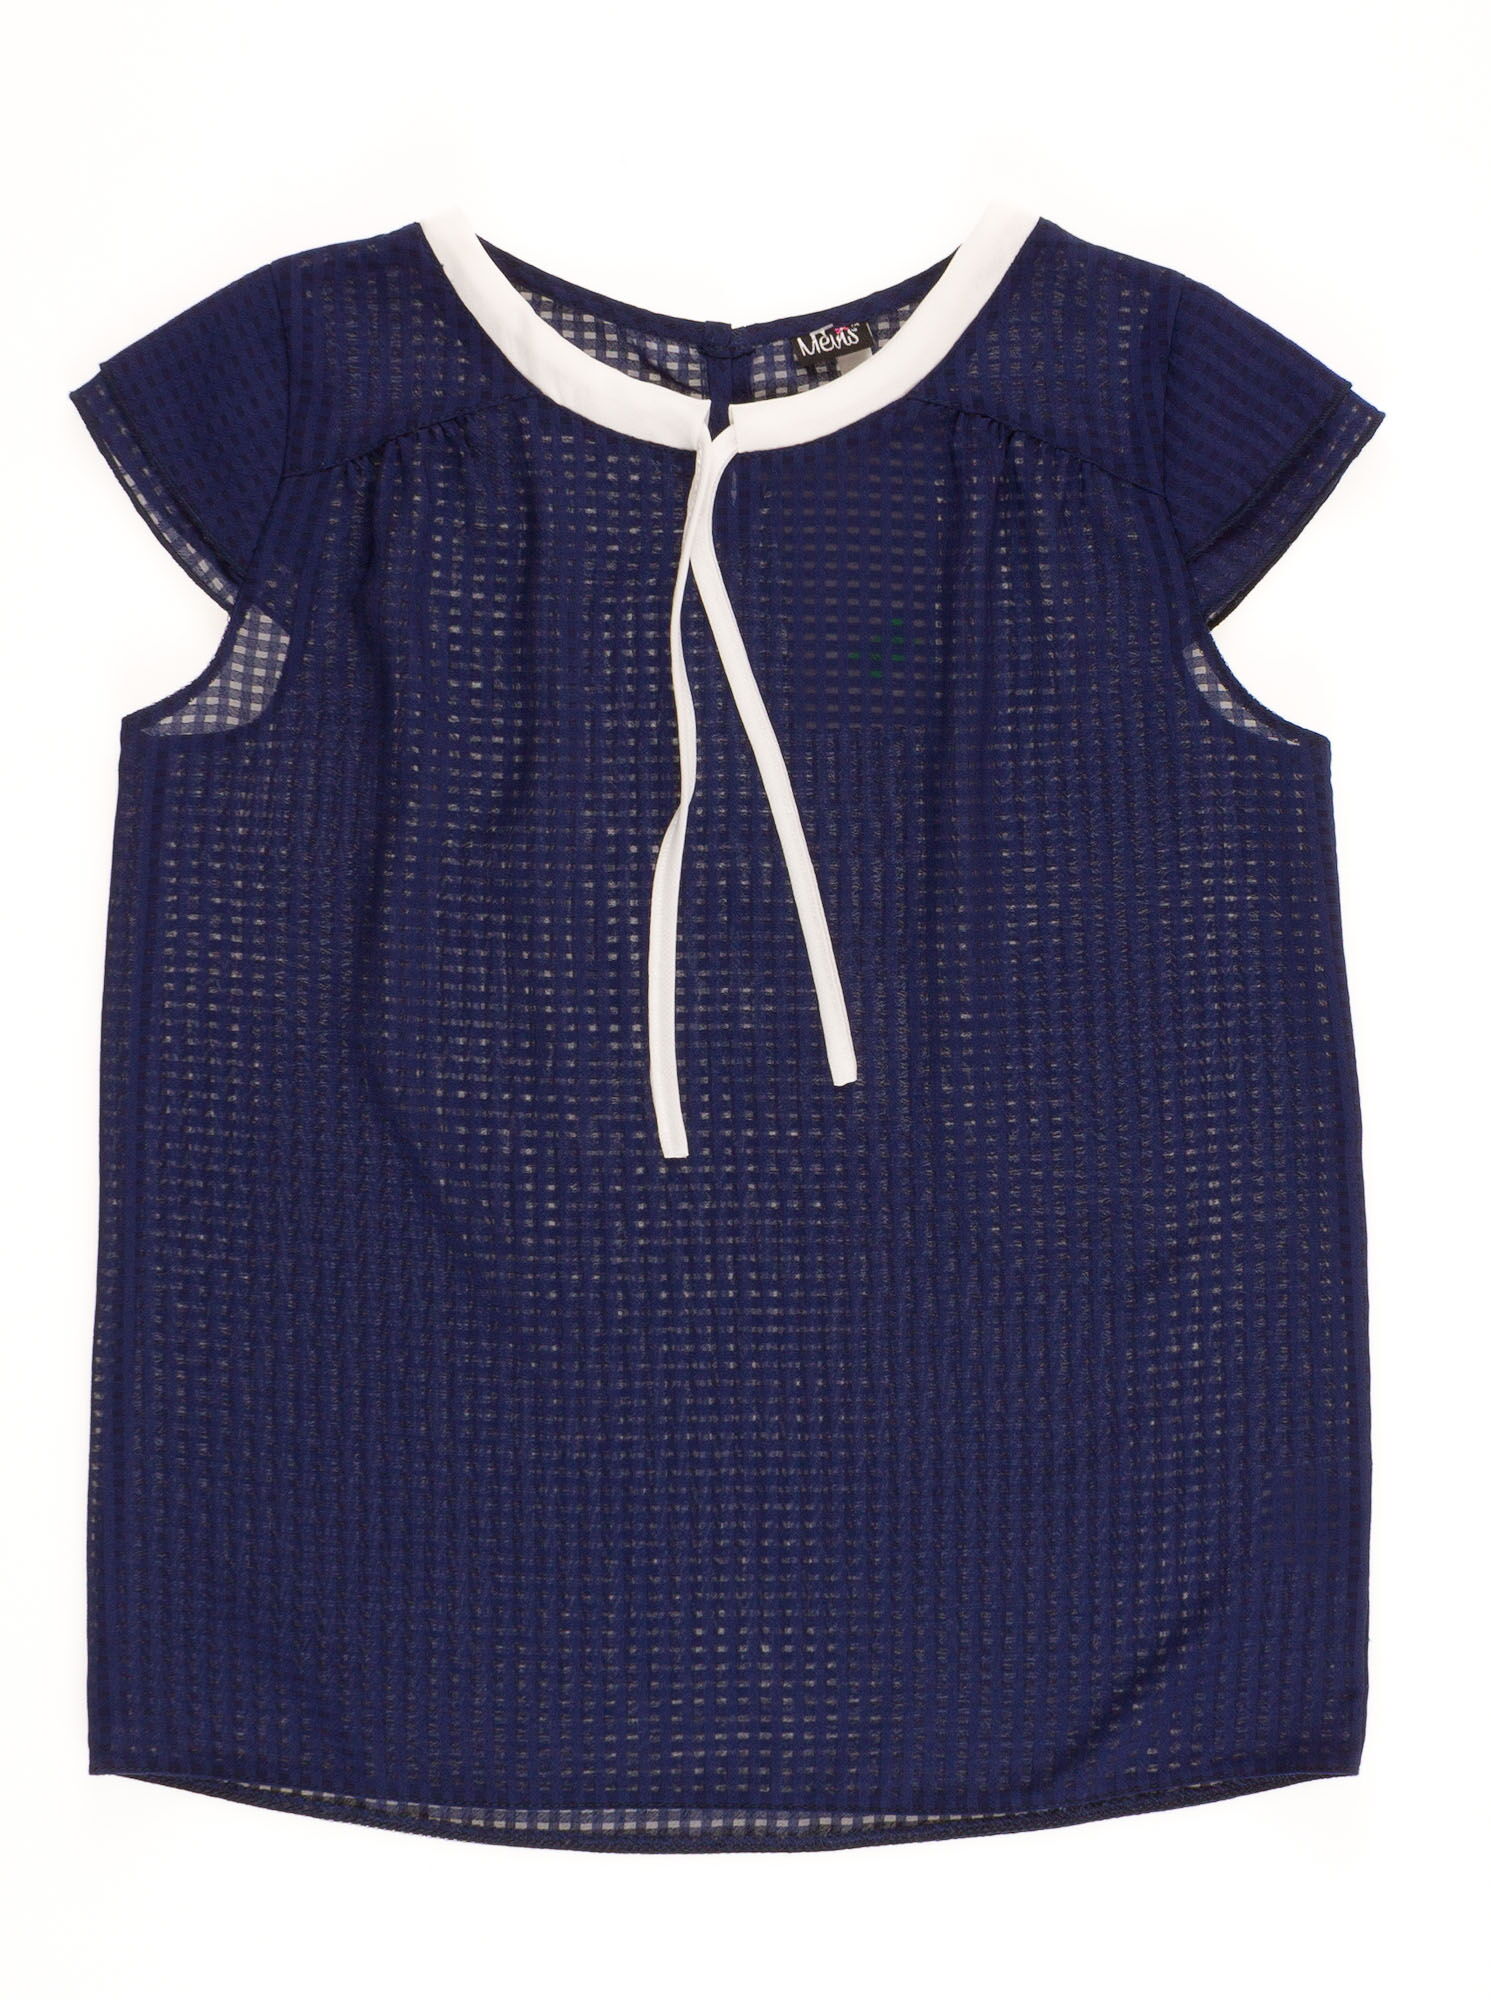 Блузка с коротким рукавом для девочки MEVIS синяя 2067 - цена